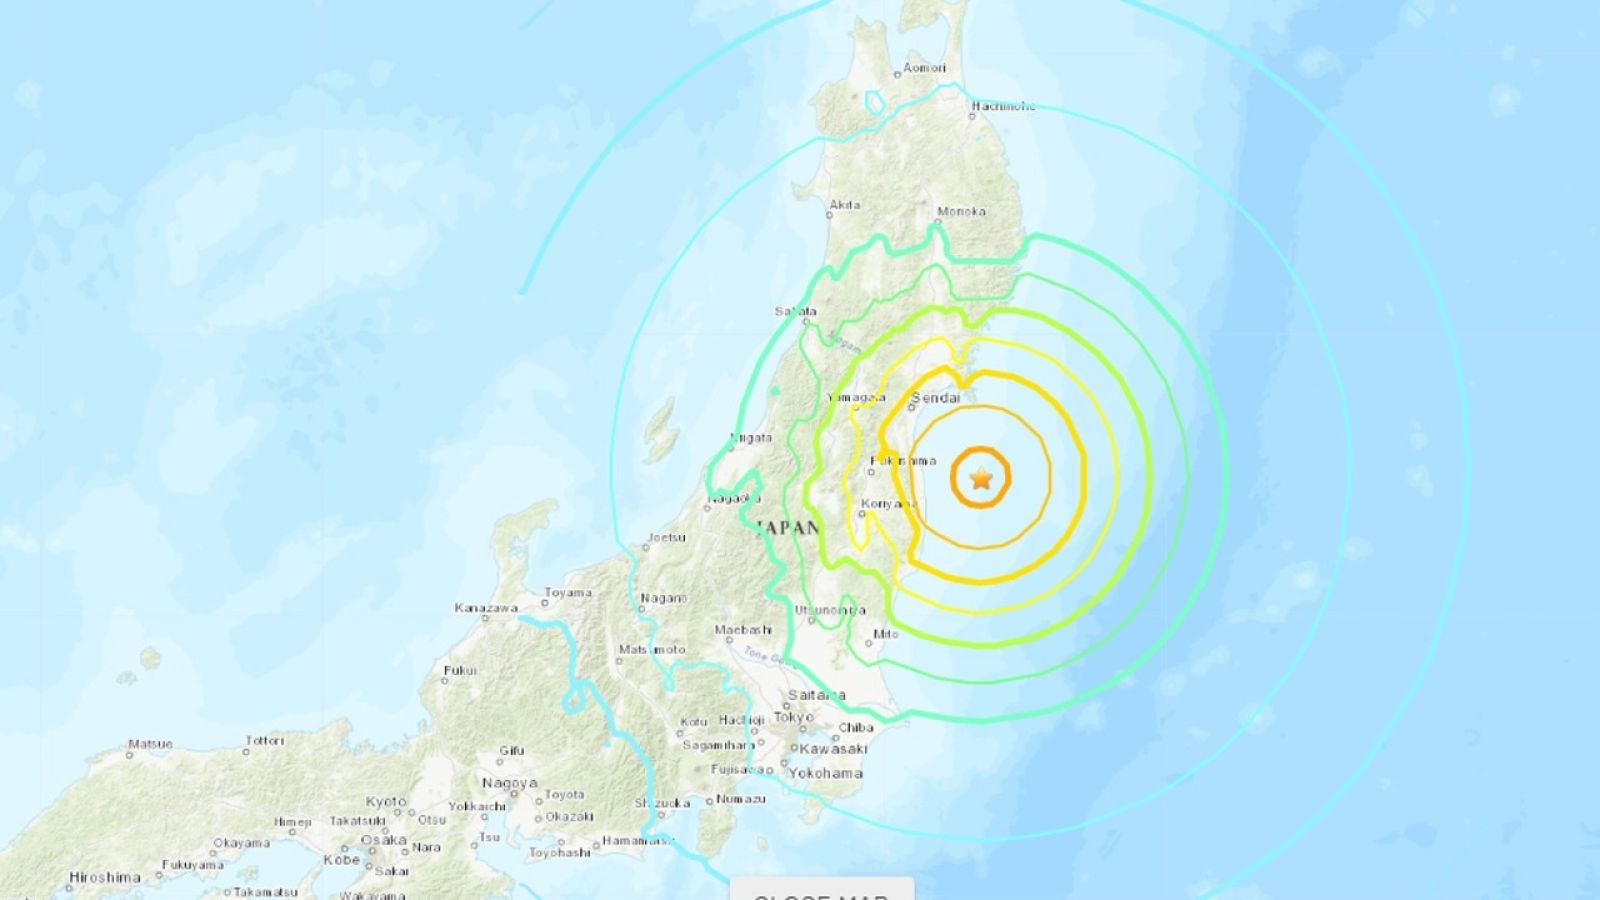 Terremoto de magnitud 7,3 activa la alerta de tsunami en Japón